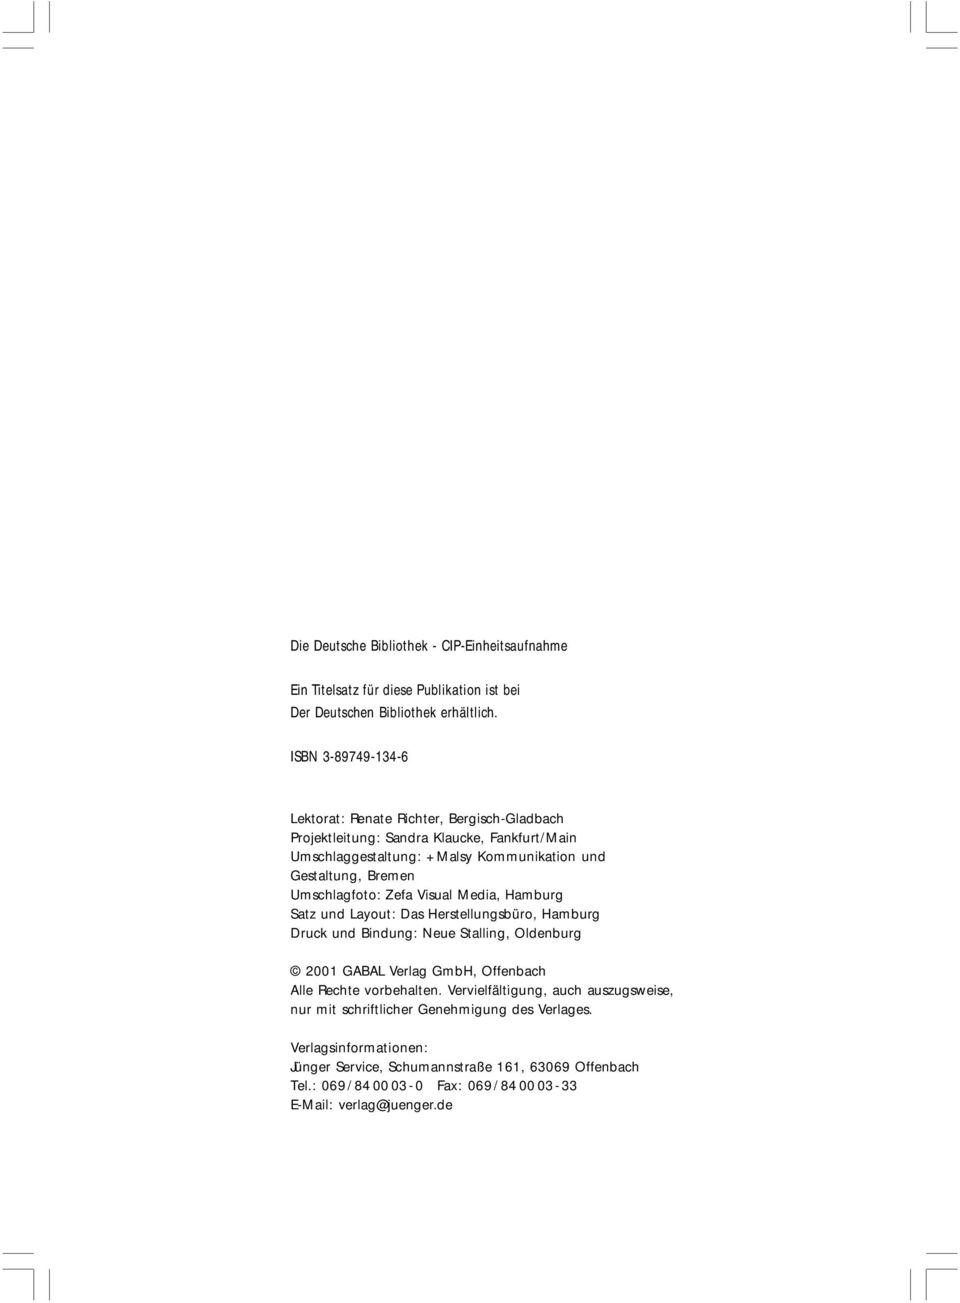 Umschlagfoto: Zefa Visual Media, Hamburg Satz und Layout: Das Herstellungsbüro, Hamburg Druck und Bindung: Neue Stalling, Oldenburg 2001 GABAL Verlag GmbH, Offenbach Alle Rechte